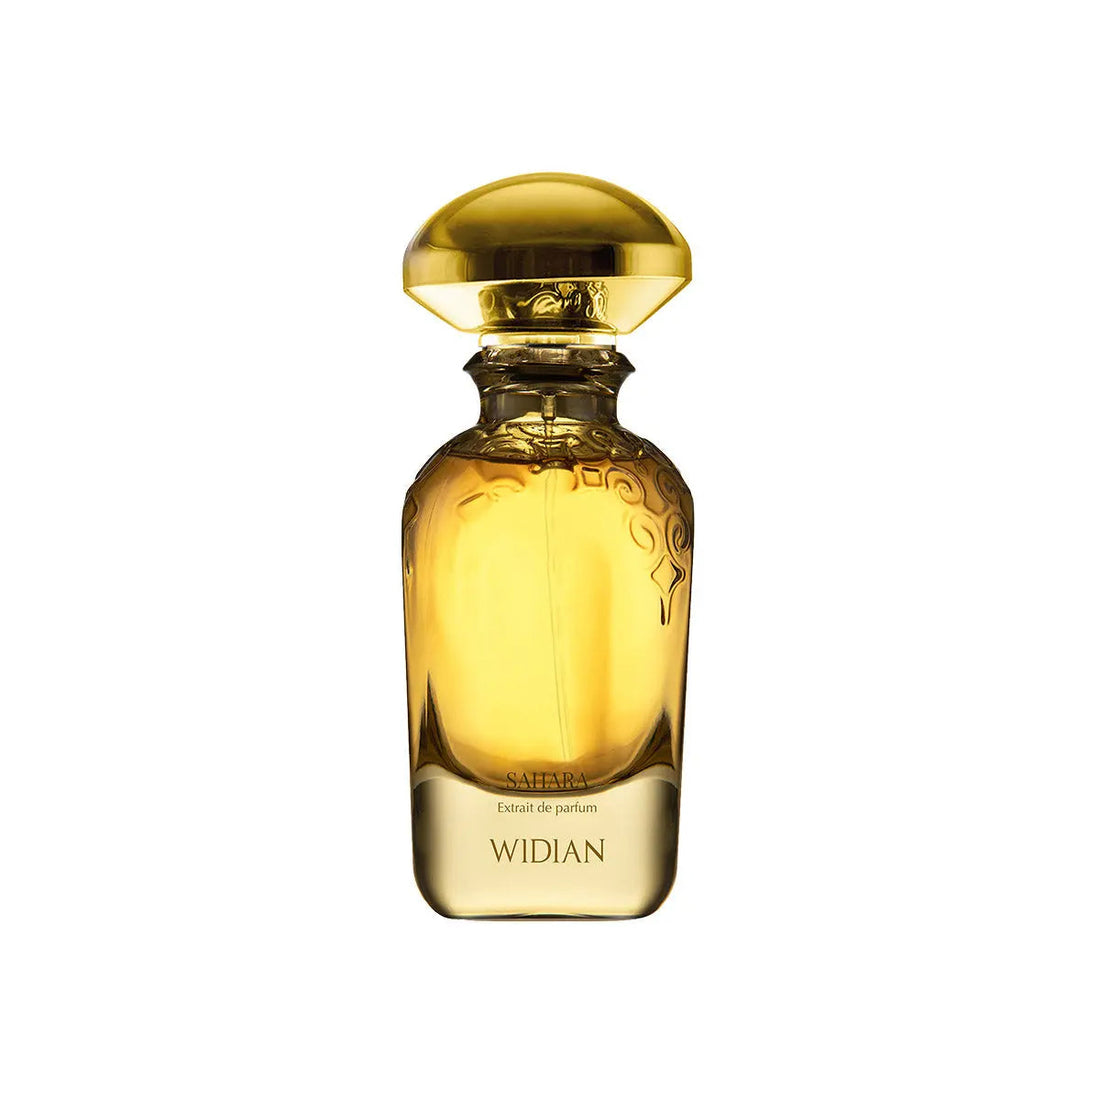 Extracto de perfume de Widian del Sáhara - 50 ml